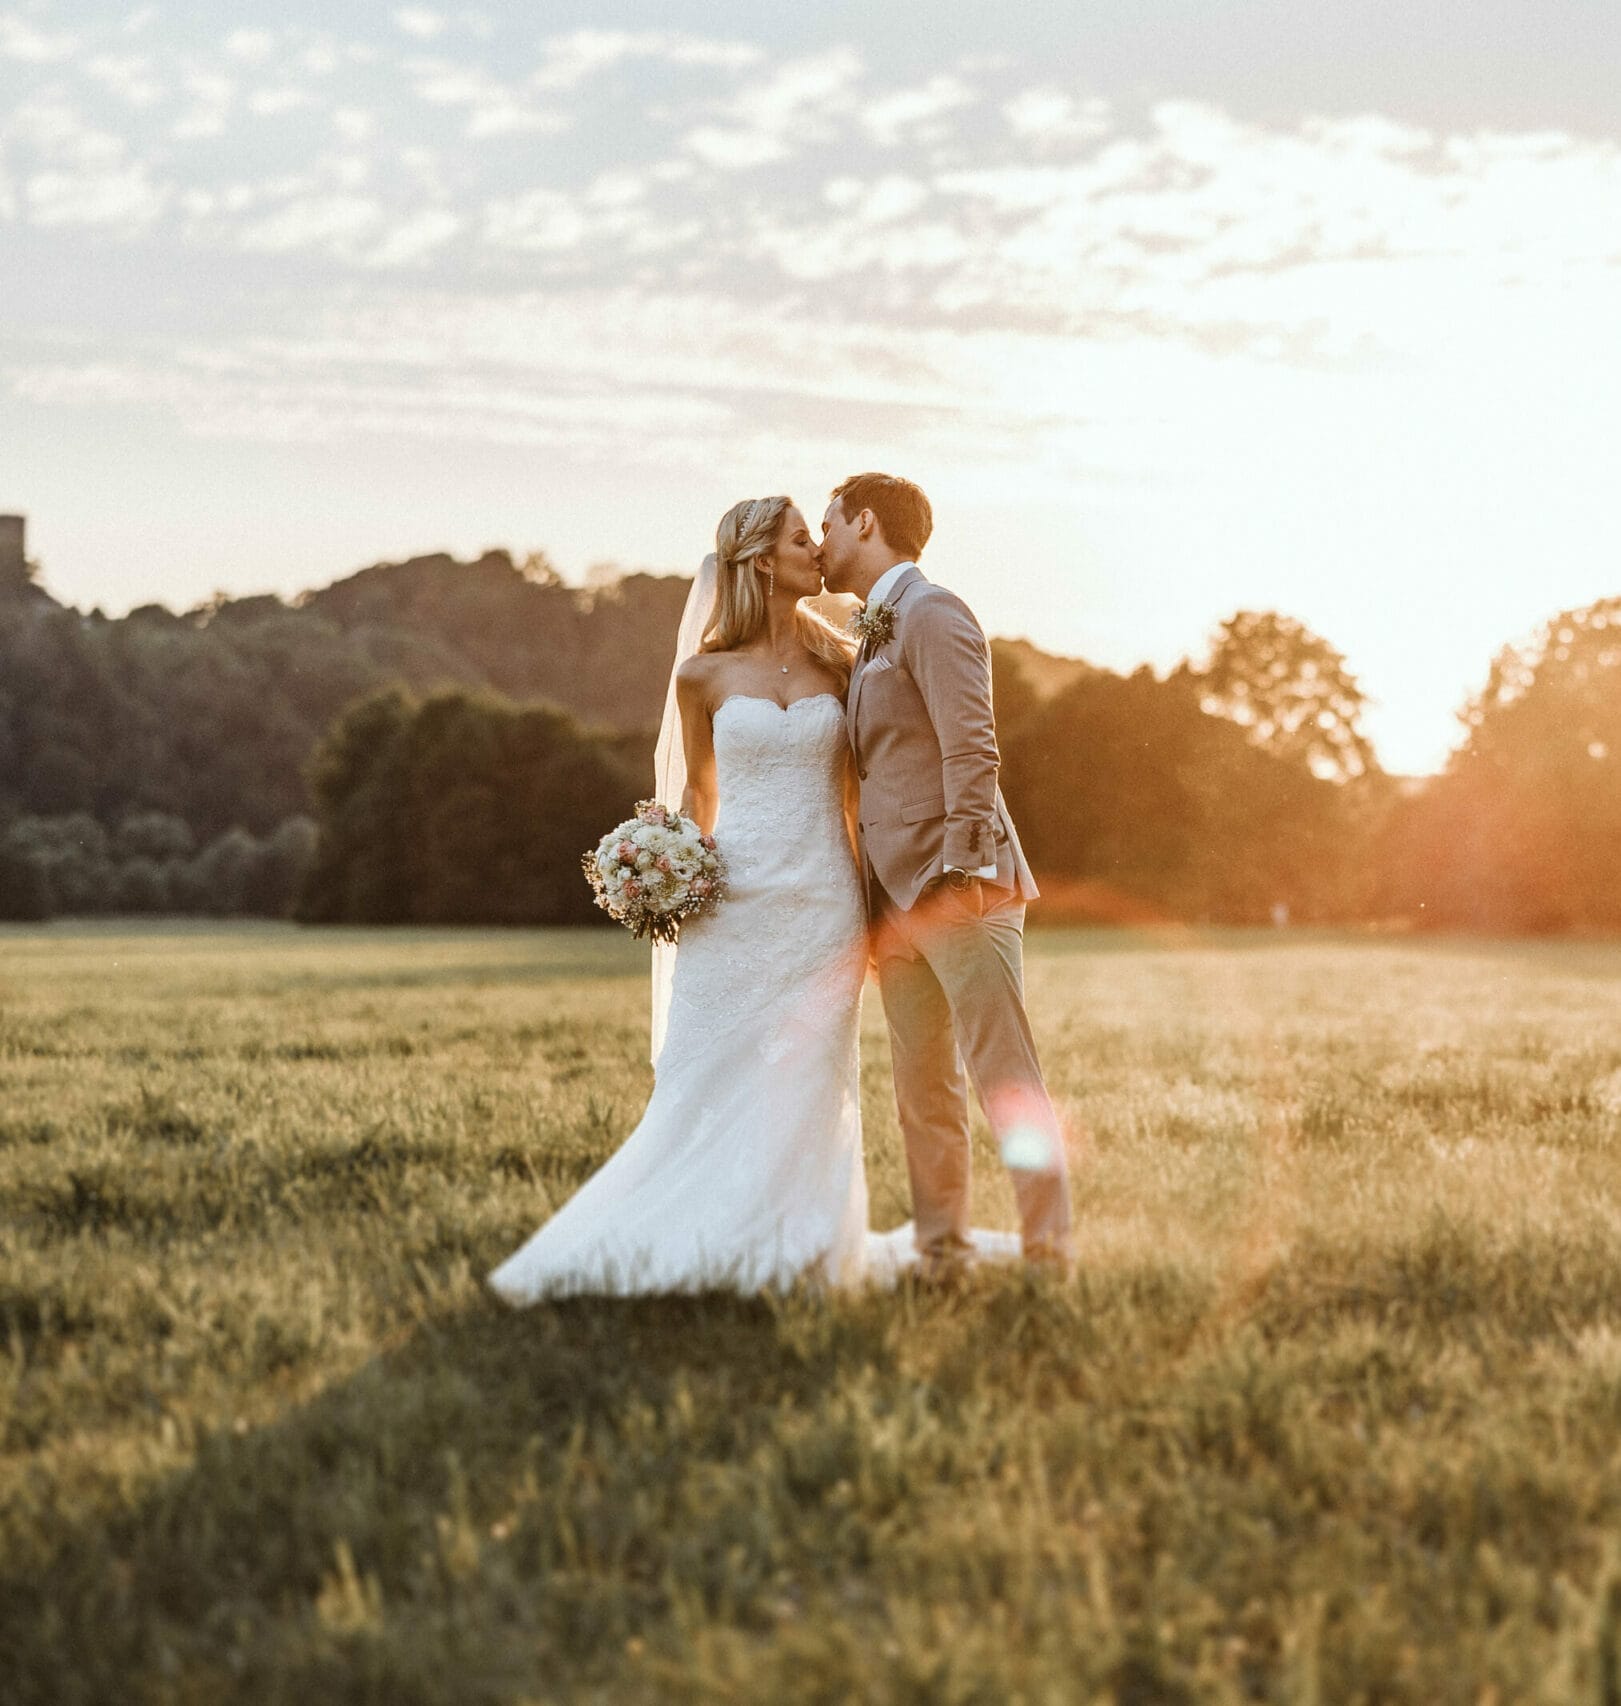 Hochzeit Heiraten Hochzeitsfotograf Dominik Neugebauer - Hochzeitspaar küsst sich auf einer Wiese bei Sonnenuntergang. Bräutigam hat seine linke Hand in der Hosentasche. Die Braut hält ihren Blumenstrauß in der rechten Hand fest. Im Hintergrund ist Wald zu erkennen.